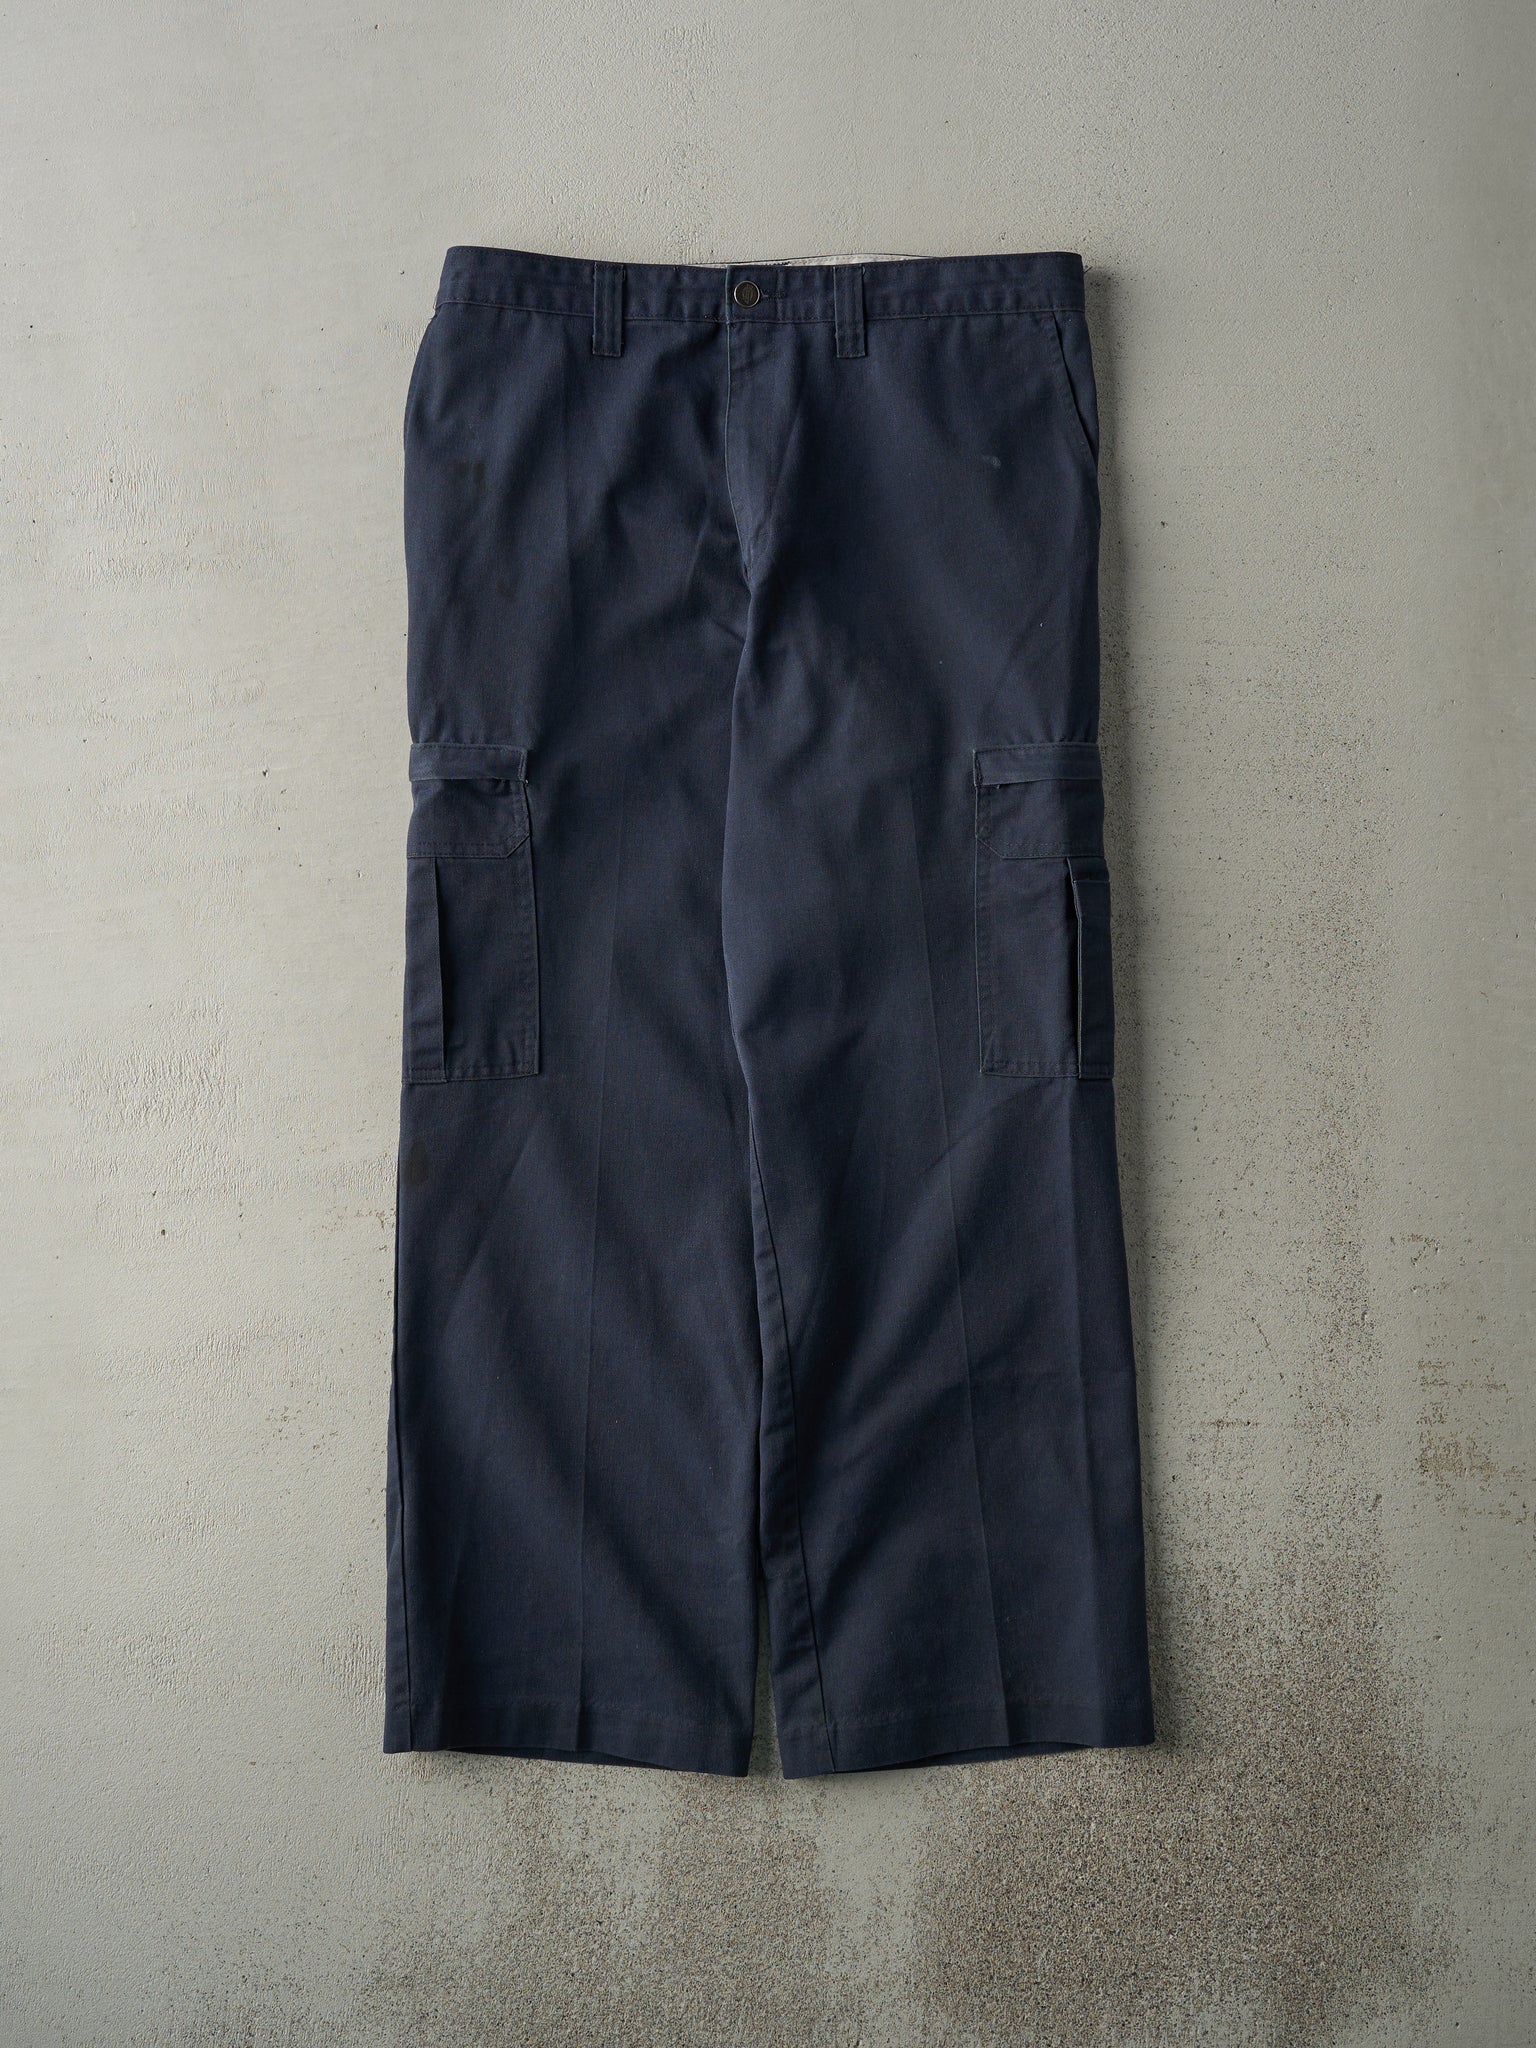 Vintage 90s Navy Blue Dickies Cargo Work Pants (34x29.5)